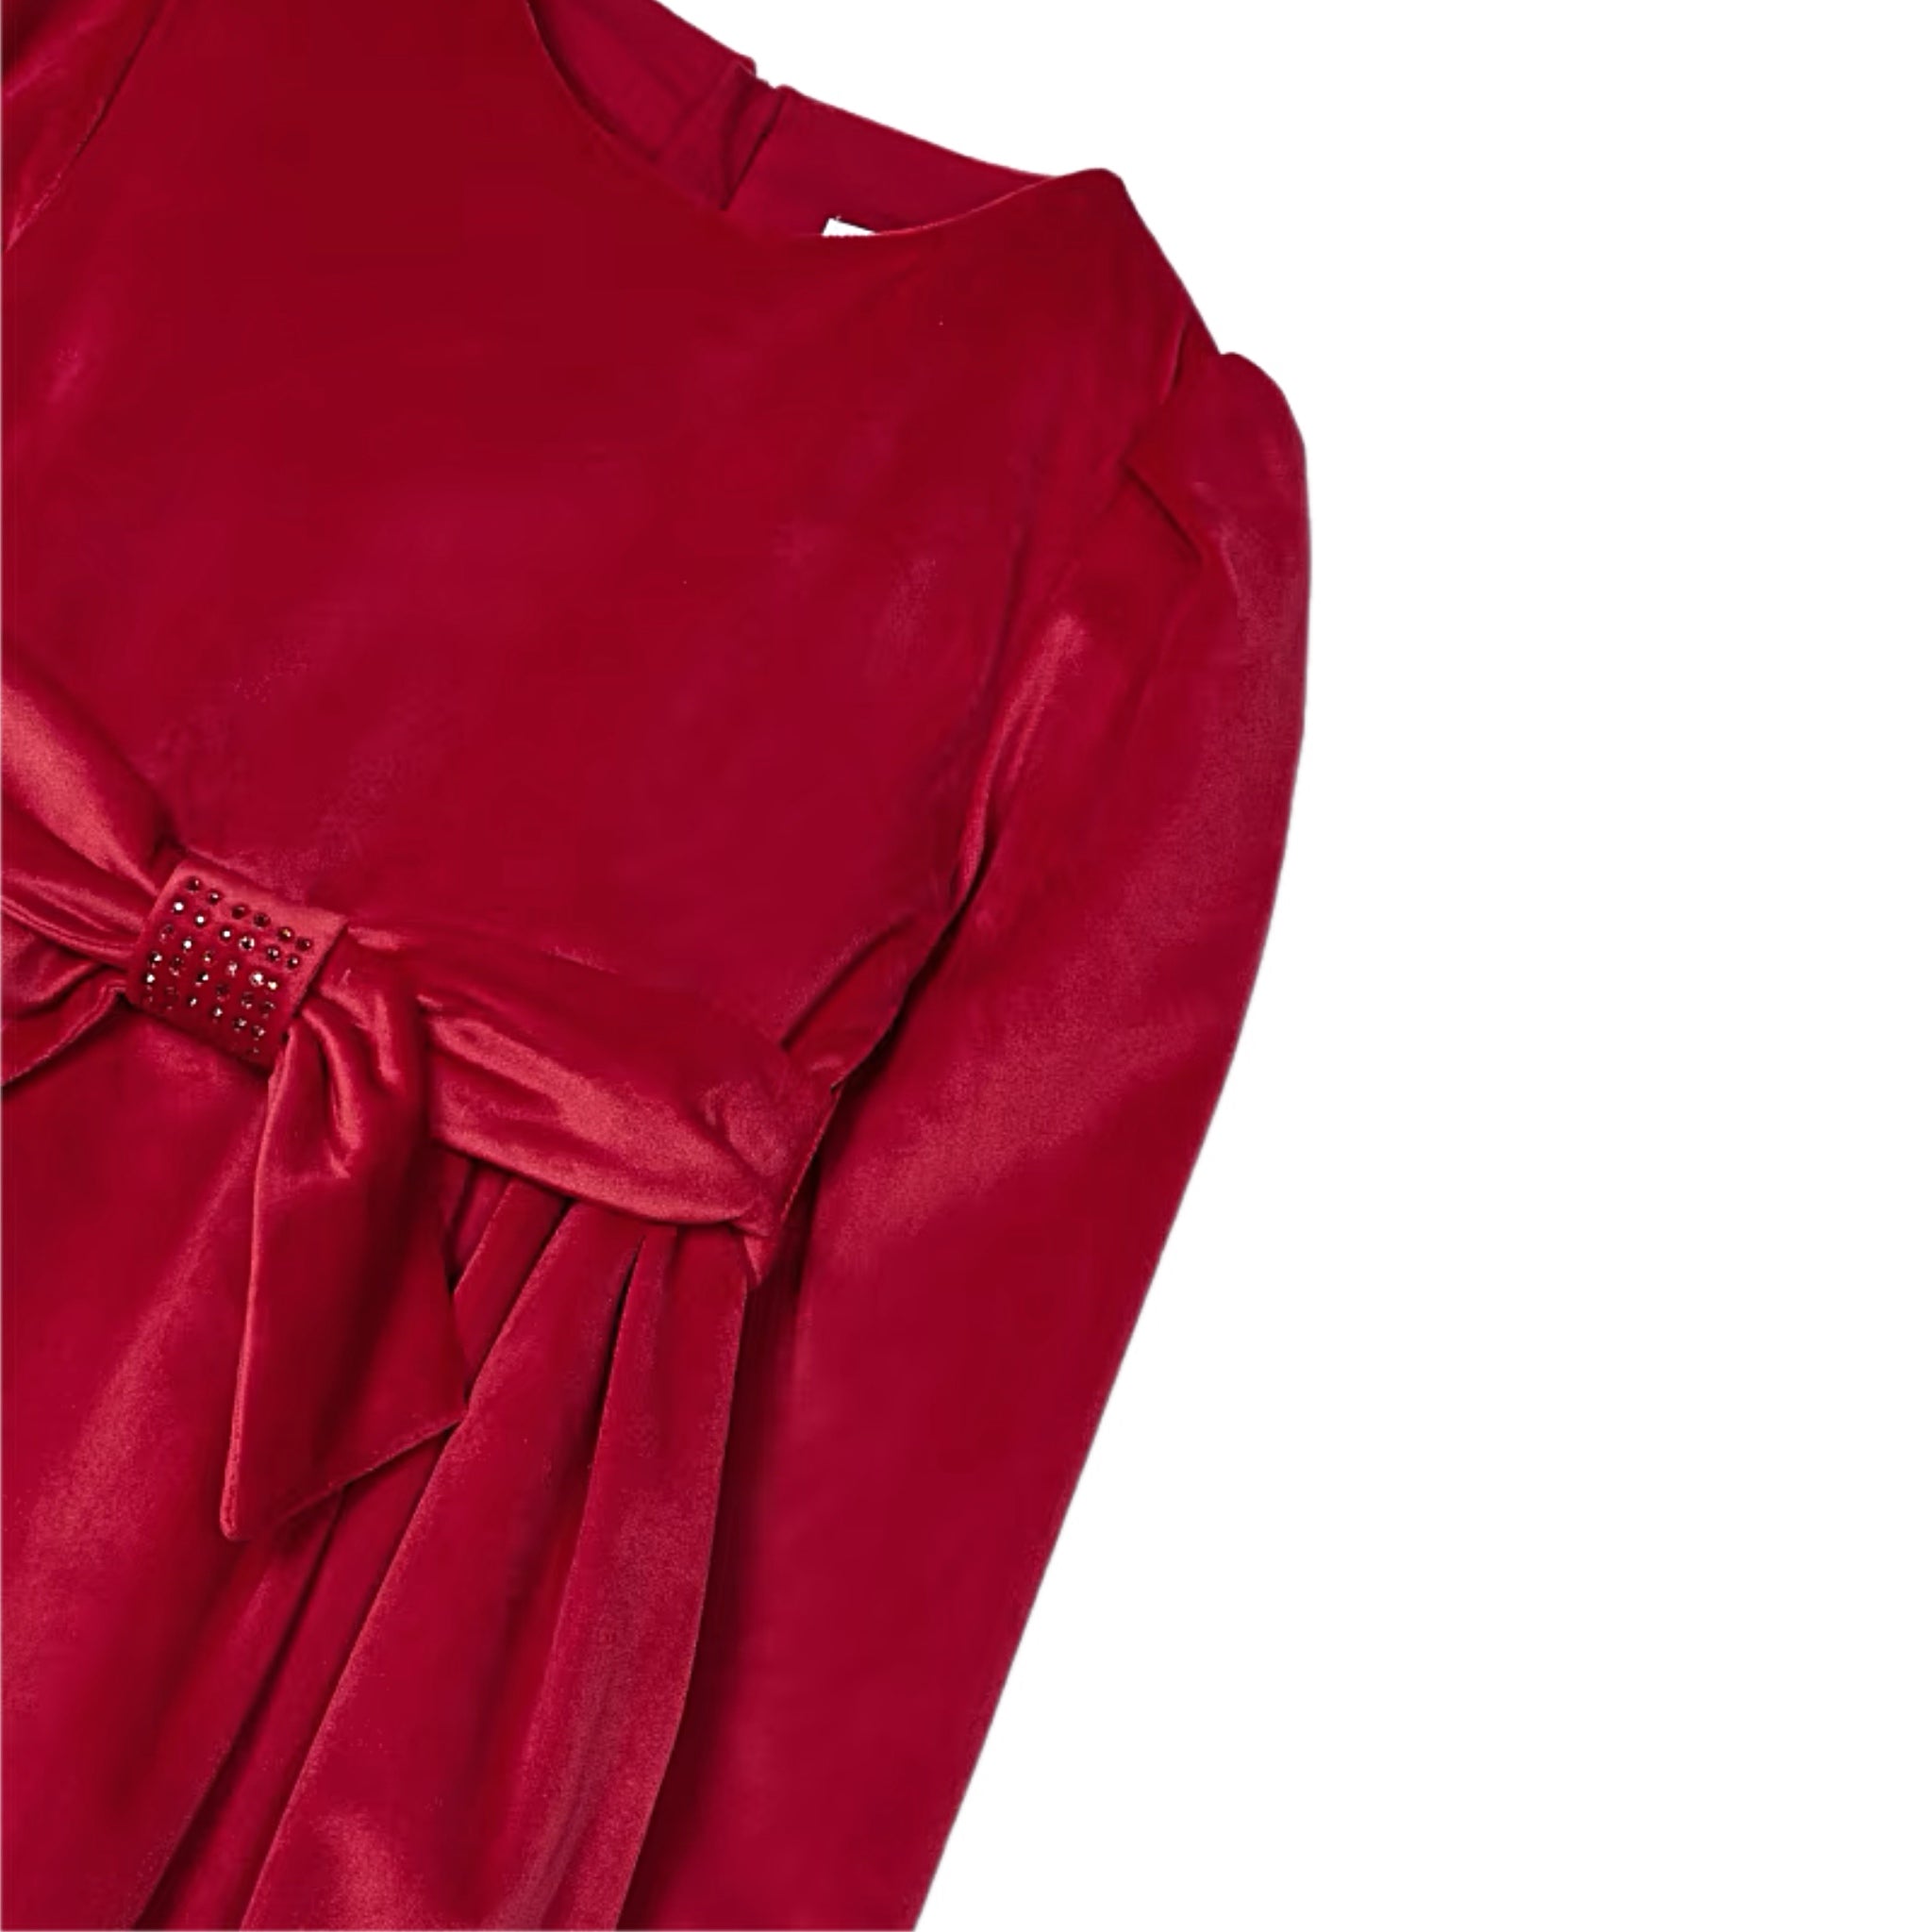 RED BELTED VELVET DRESS